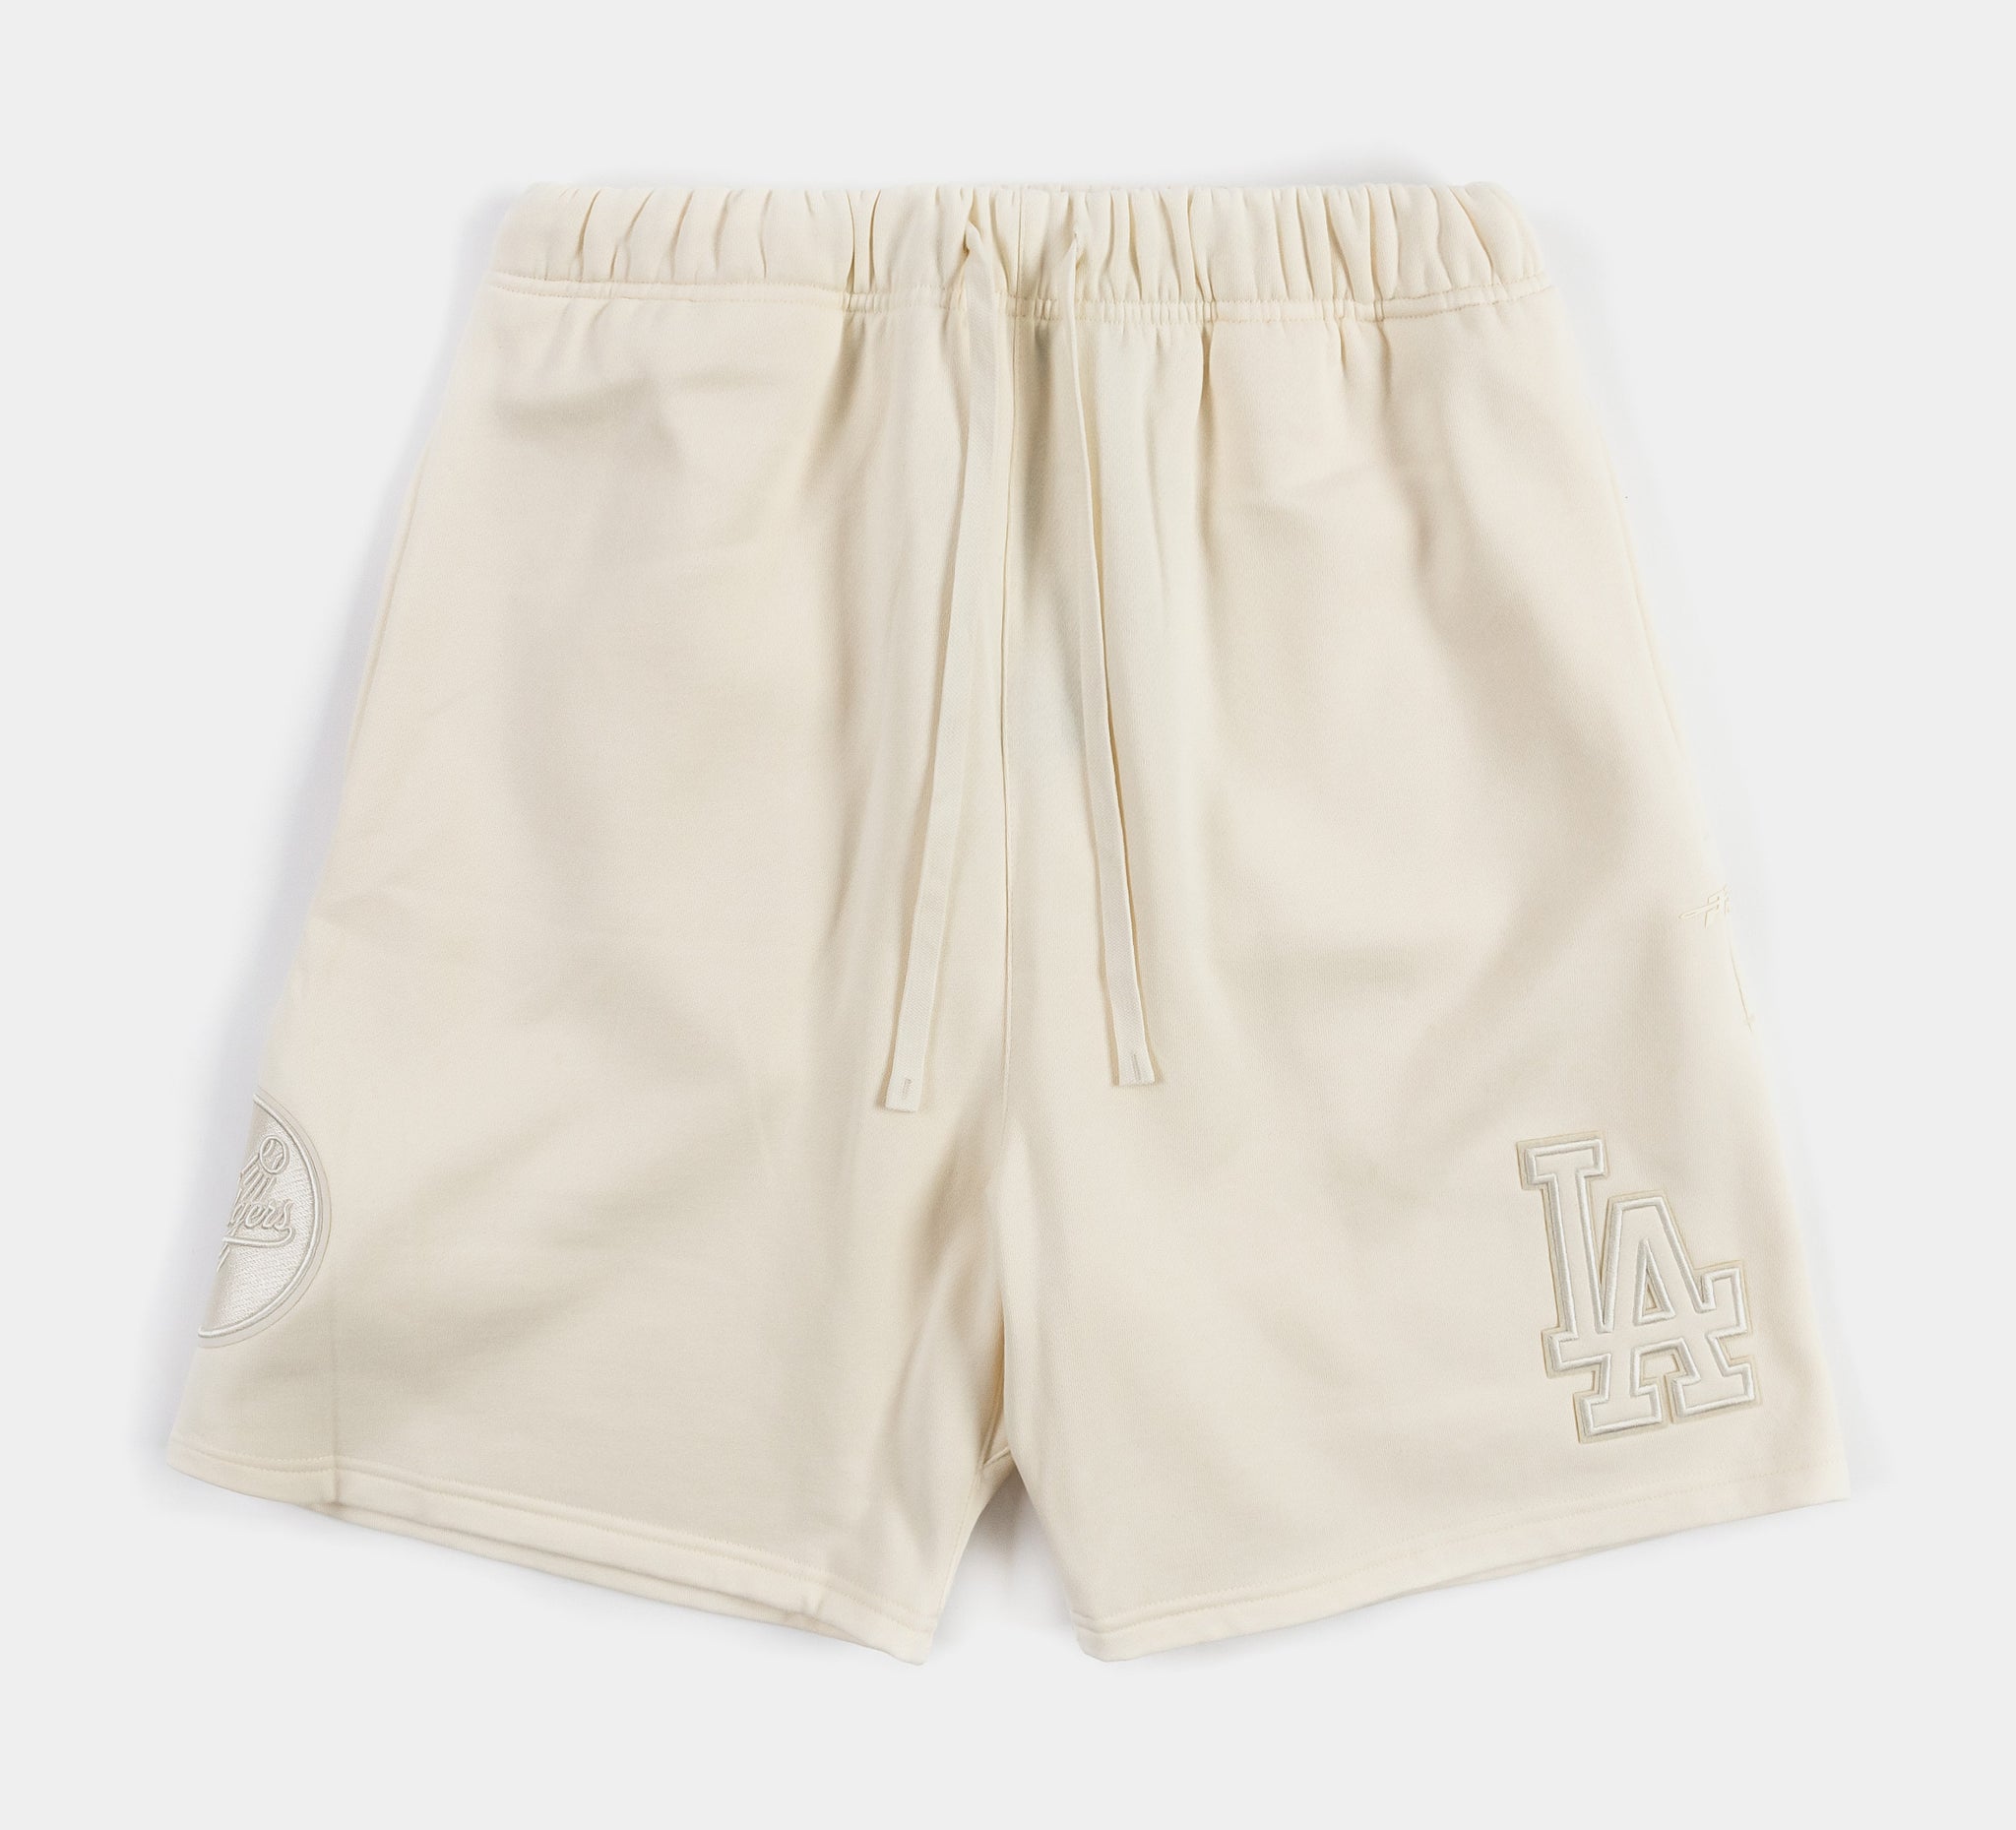 Men's Pleasures Black Los Angeles Dodgers Floral Shorts Size: Large